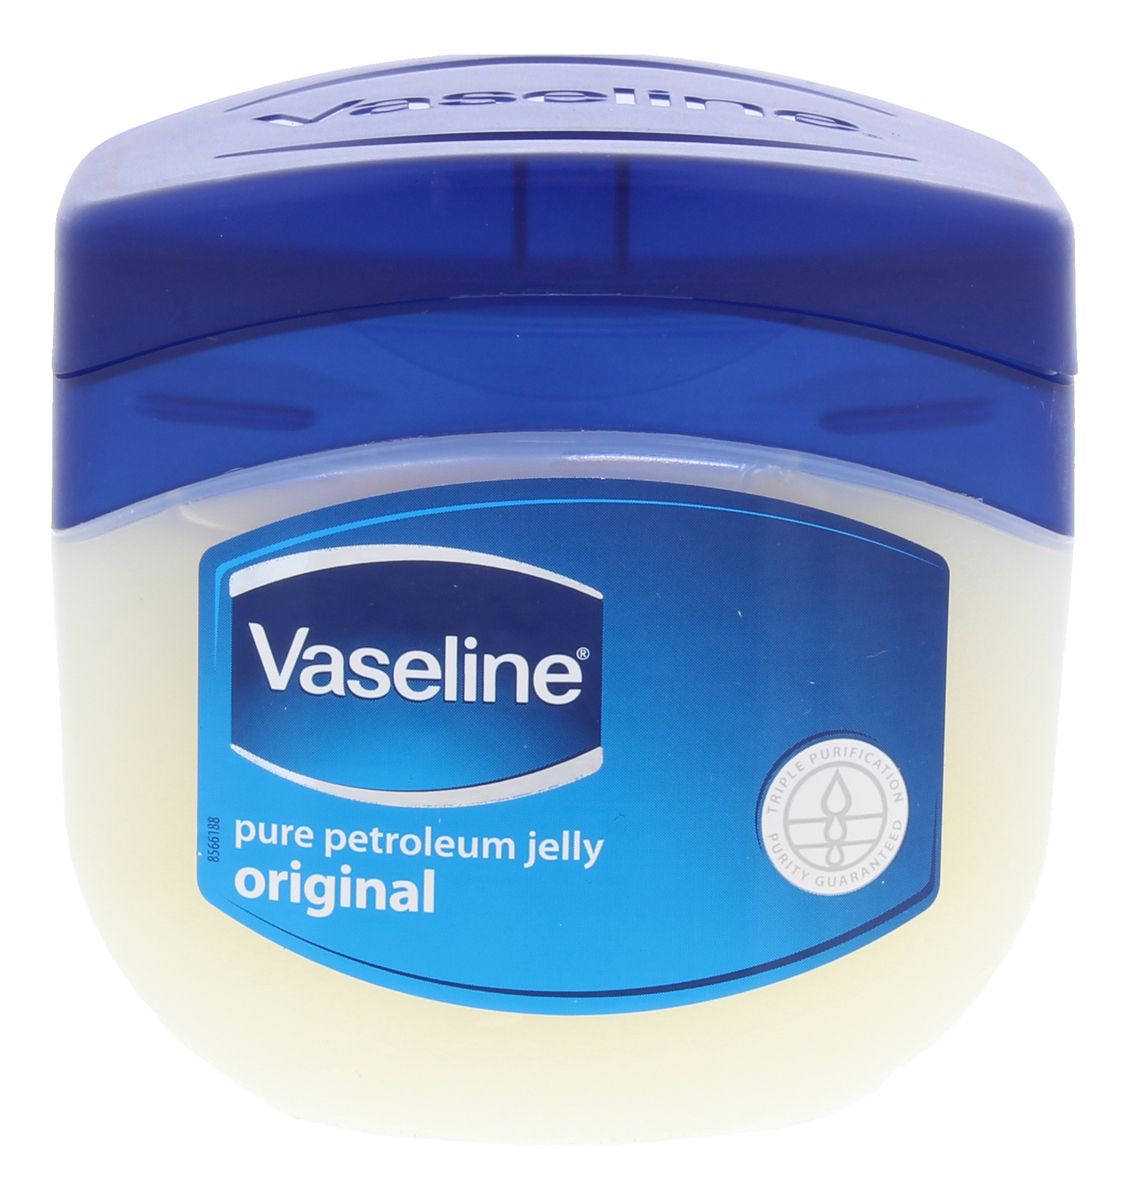 Vaseline Original Pure Petroleum Jelly g billigt Med24.dk